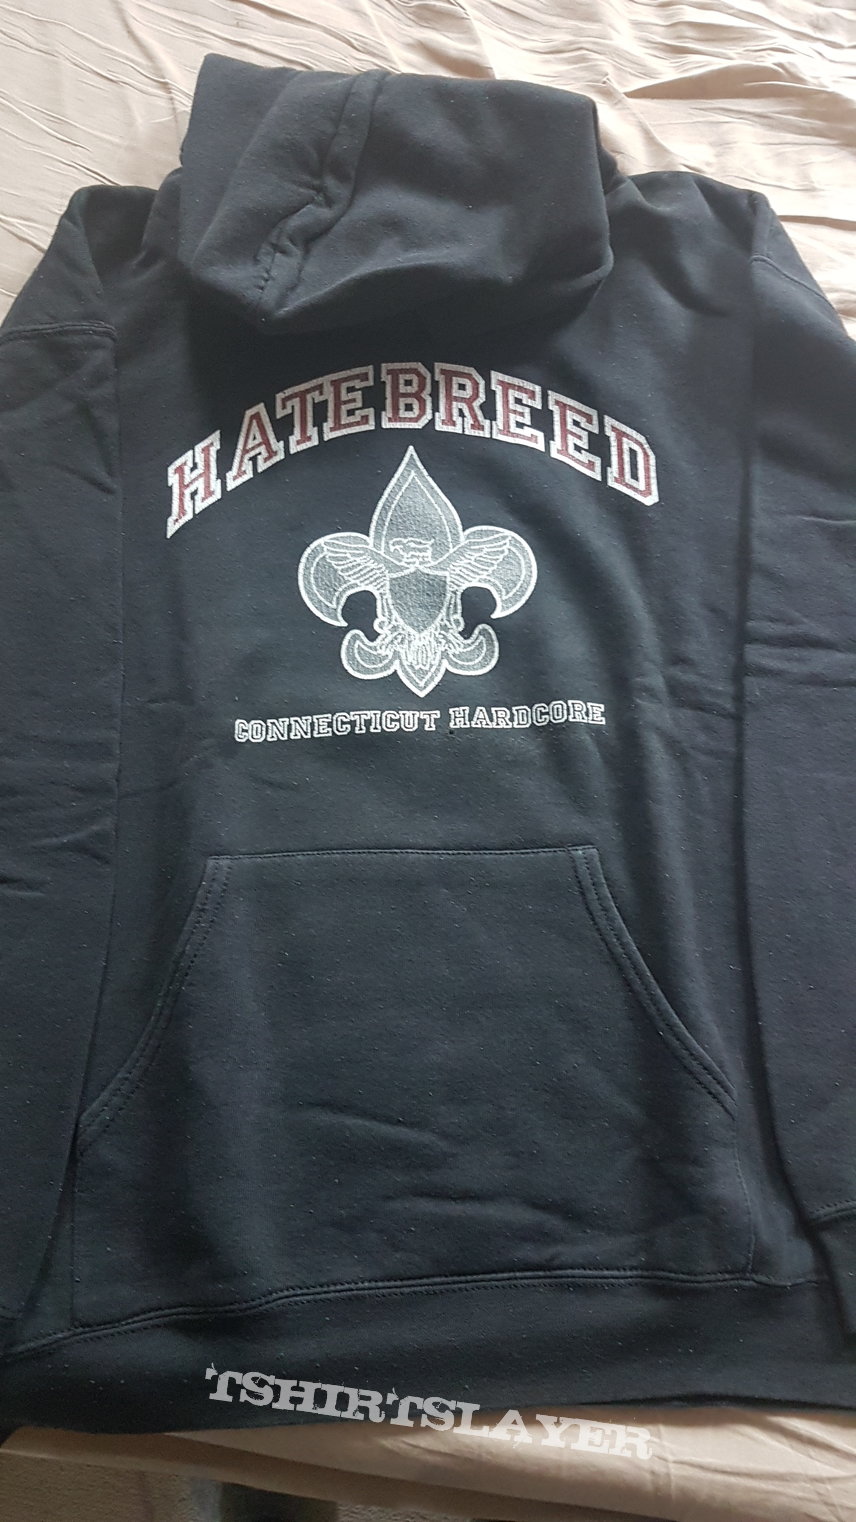 Hatebreed hoodie